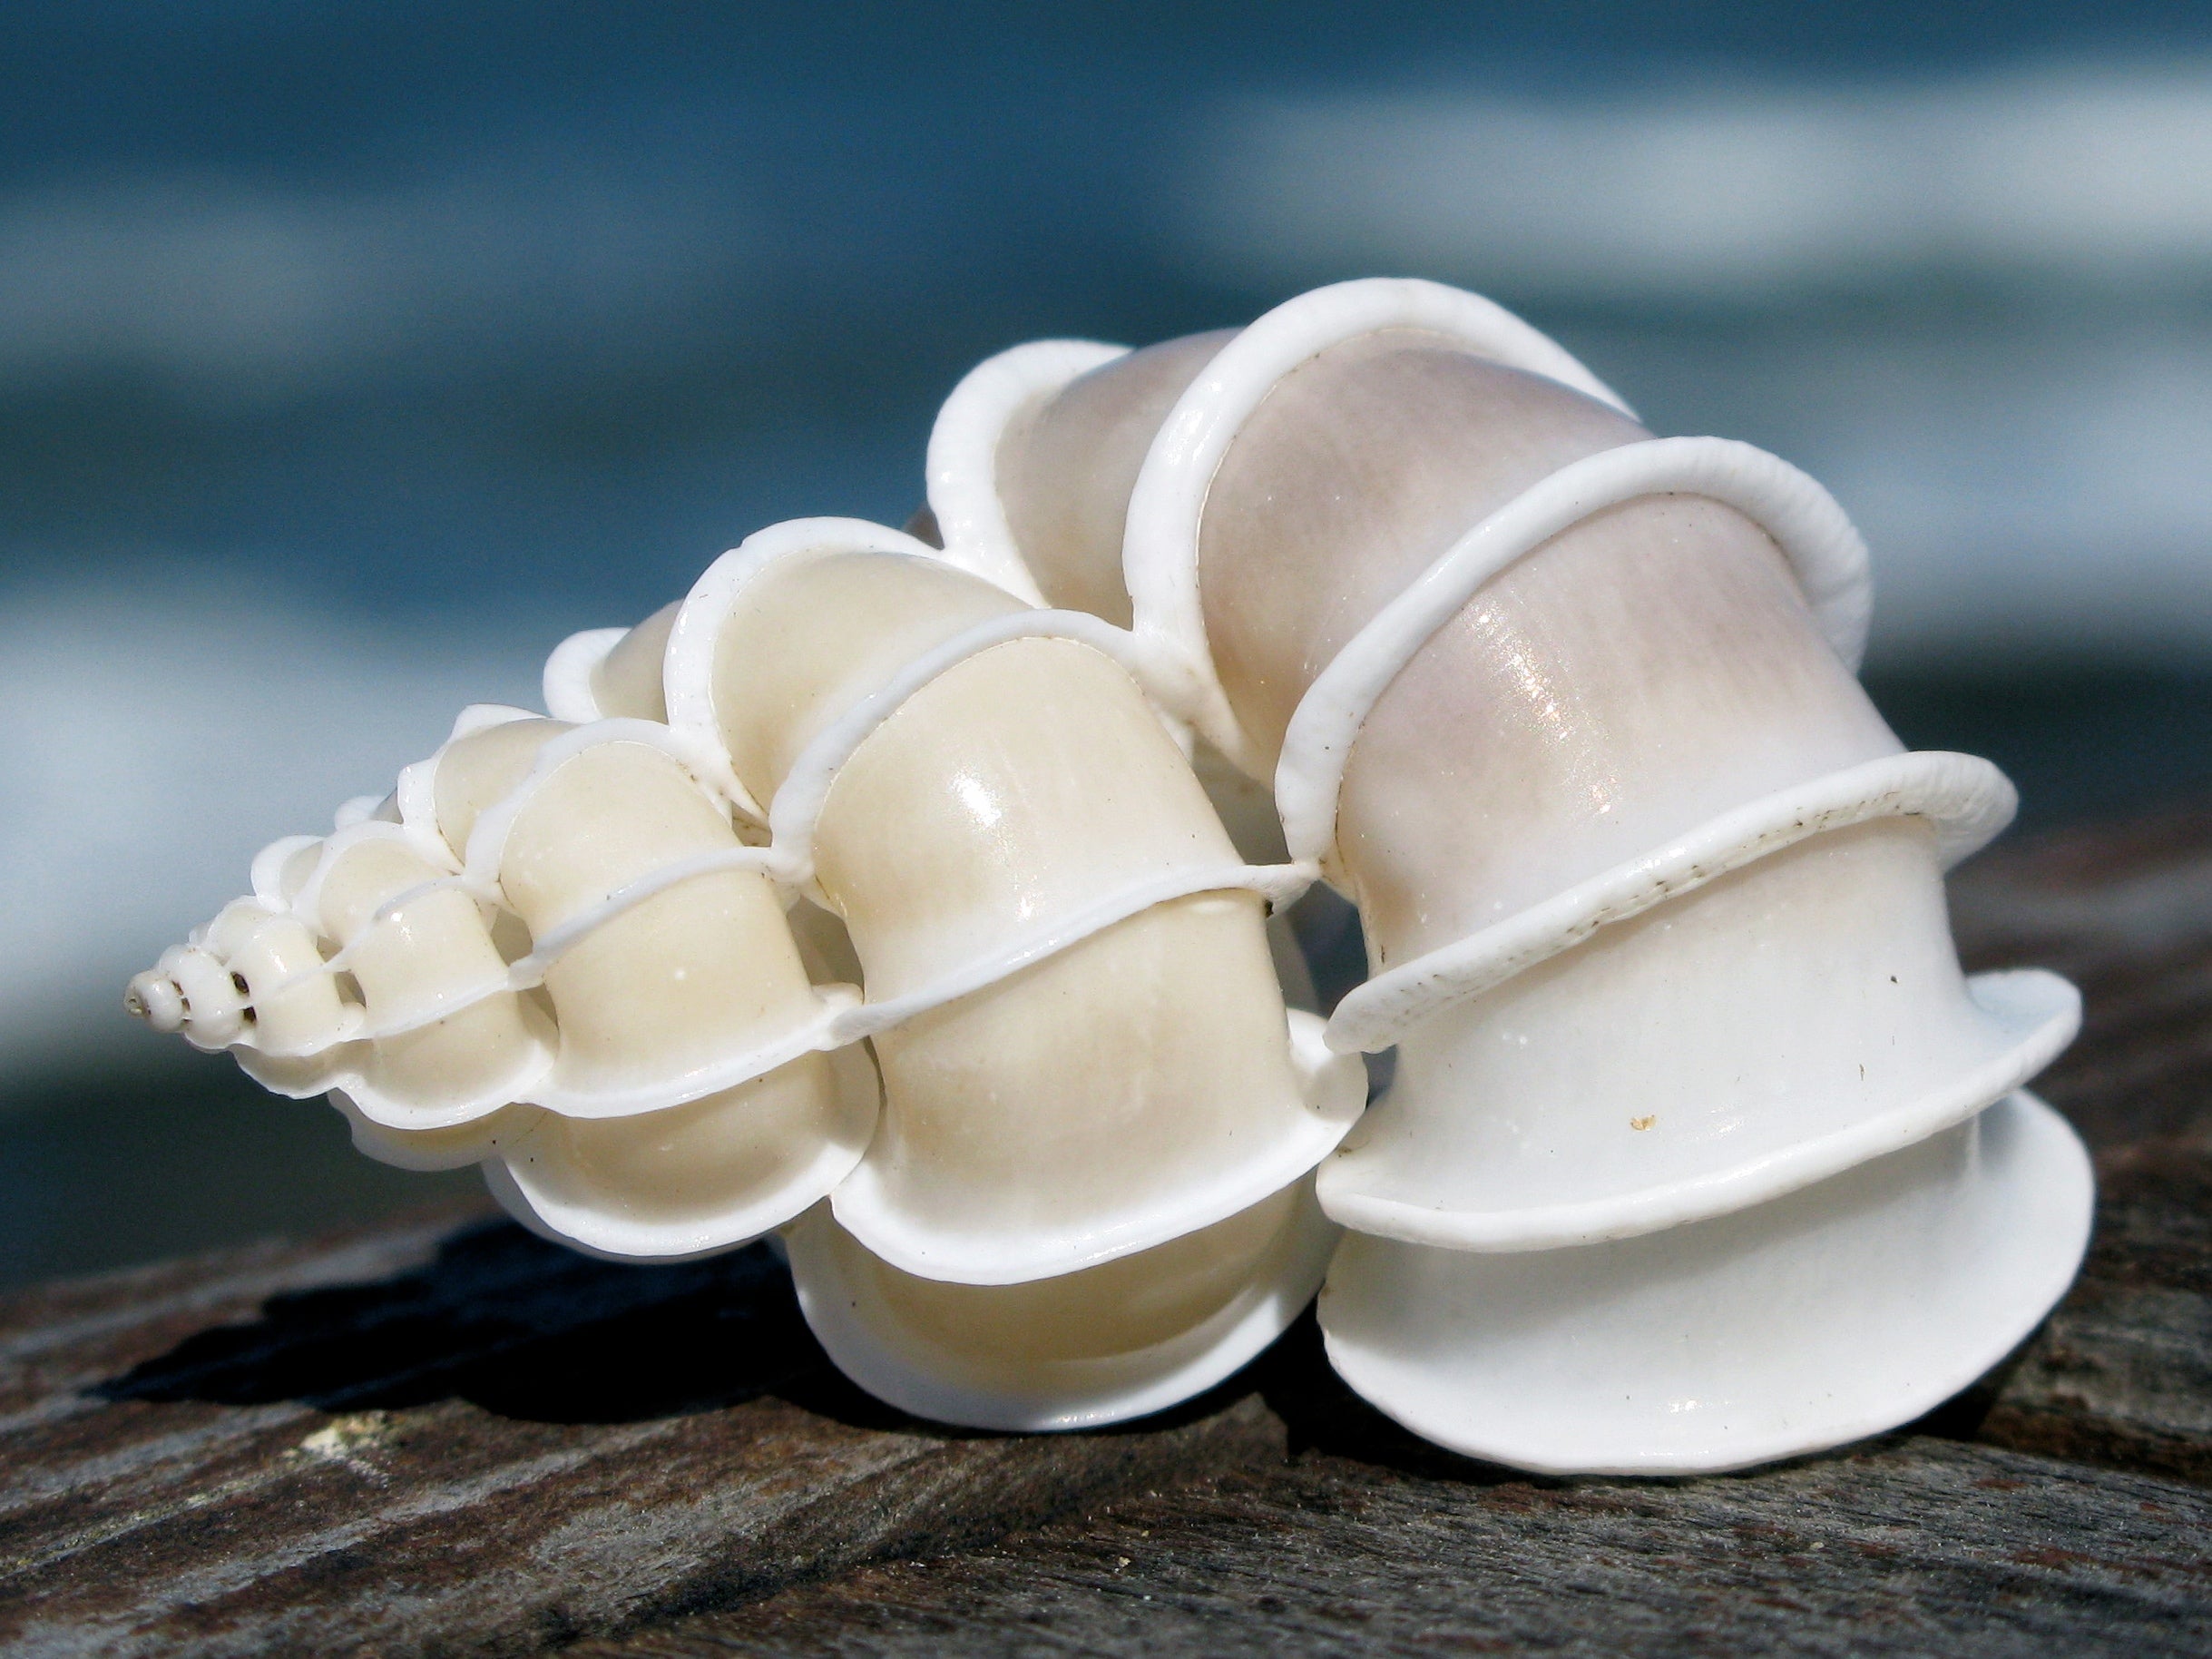 Unique types of rare seashells